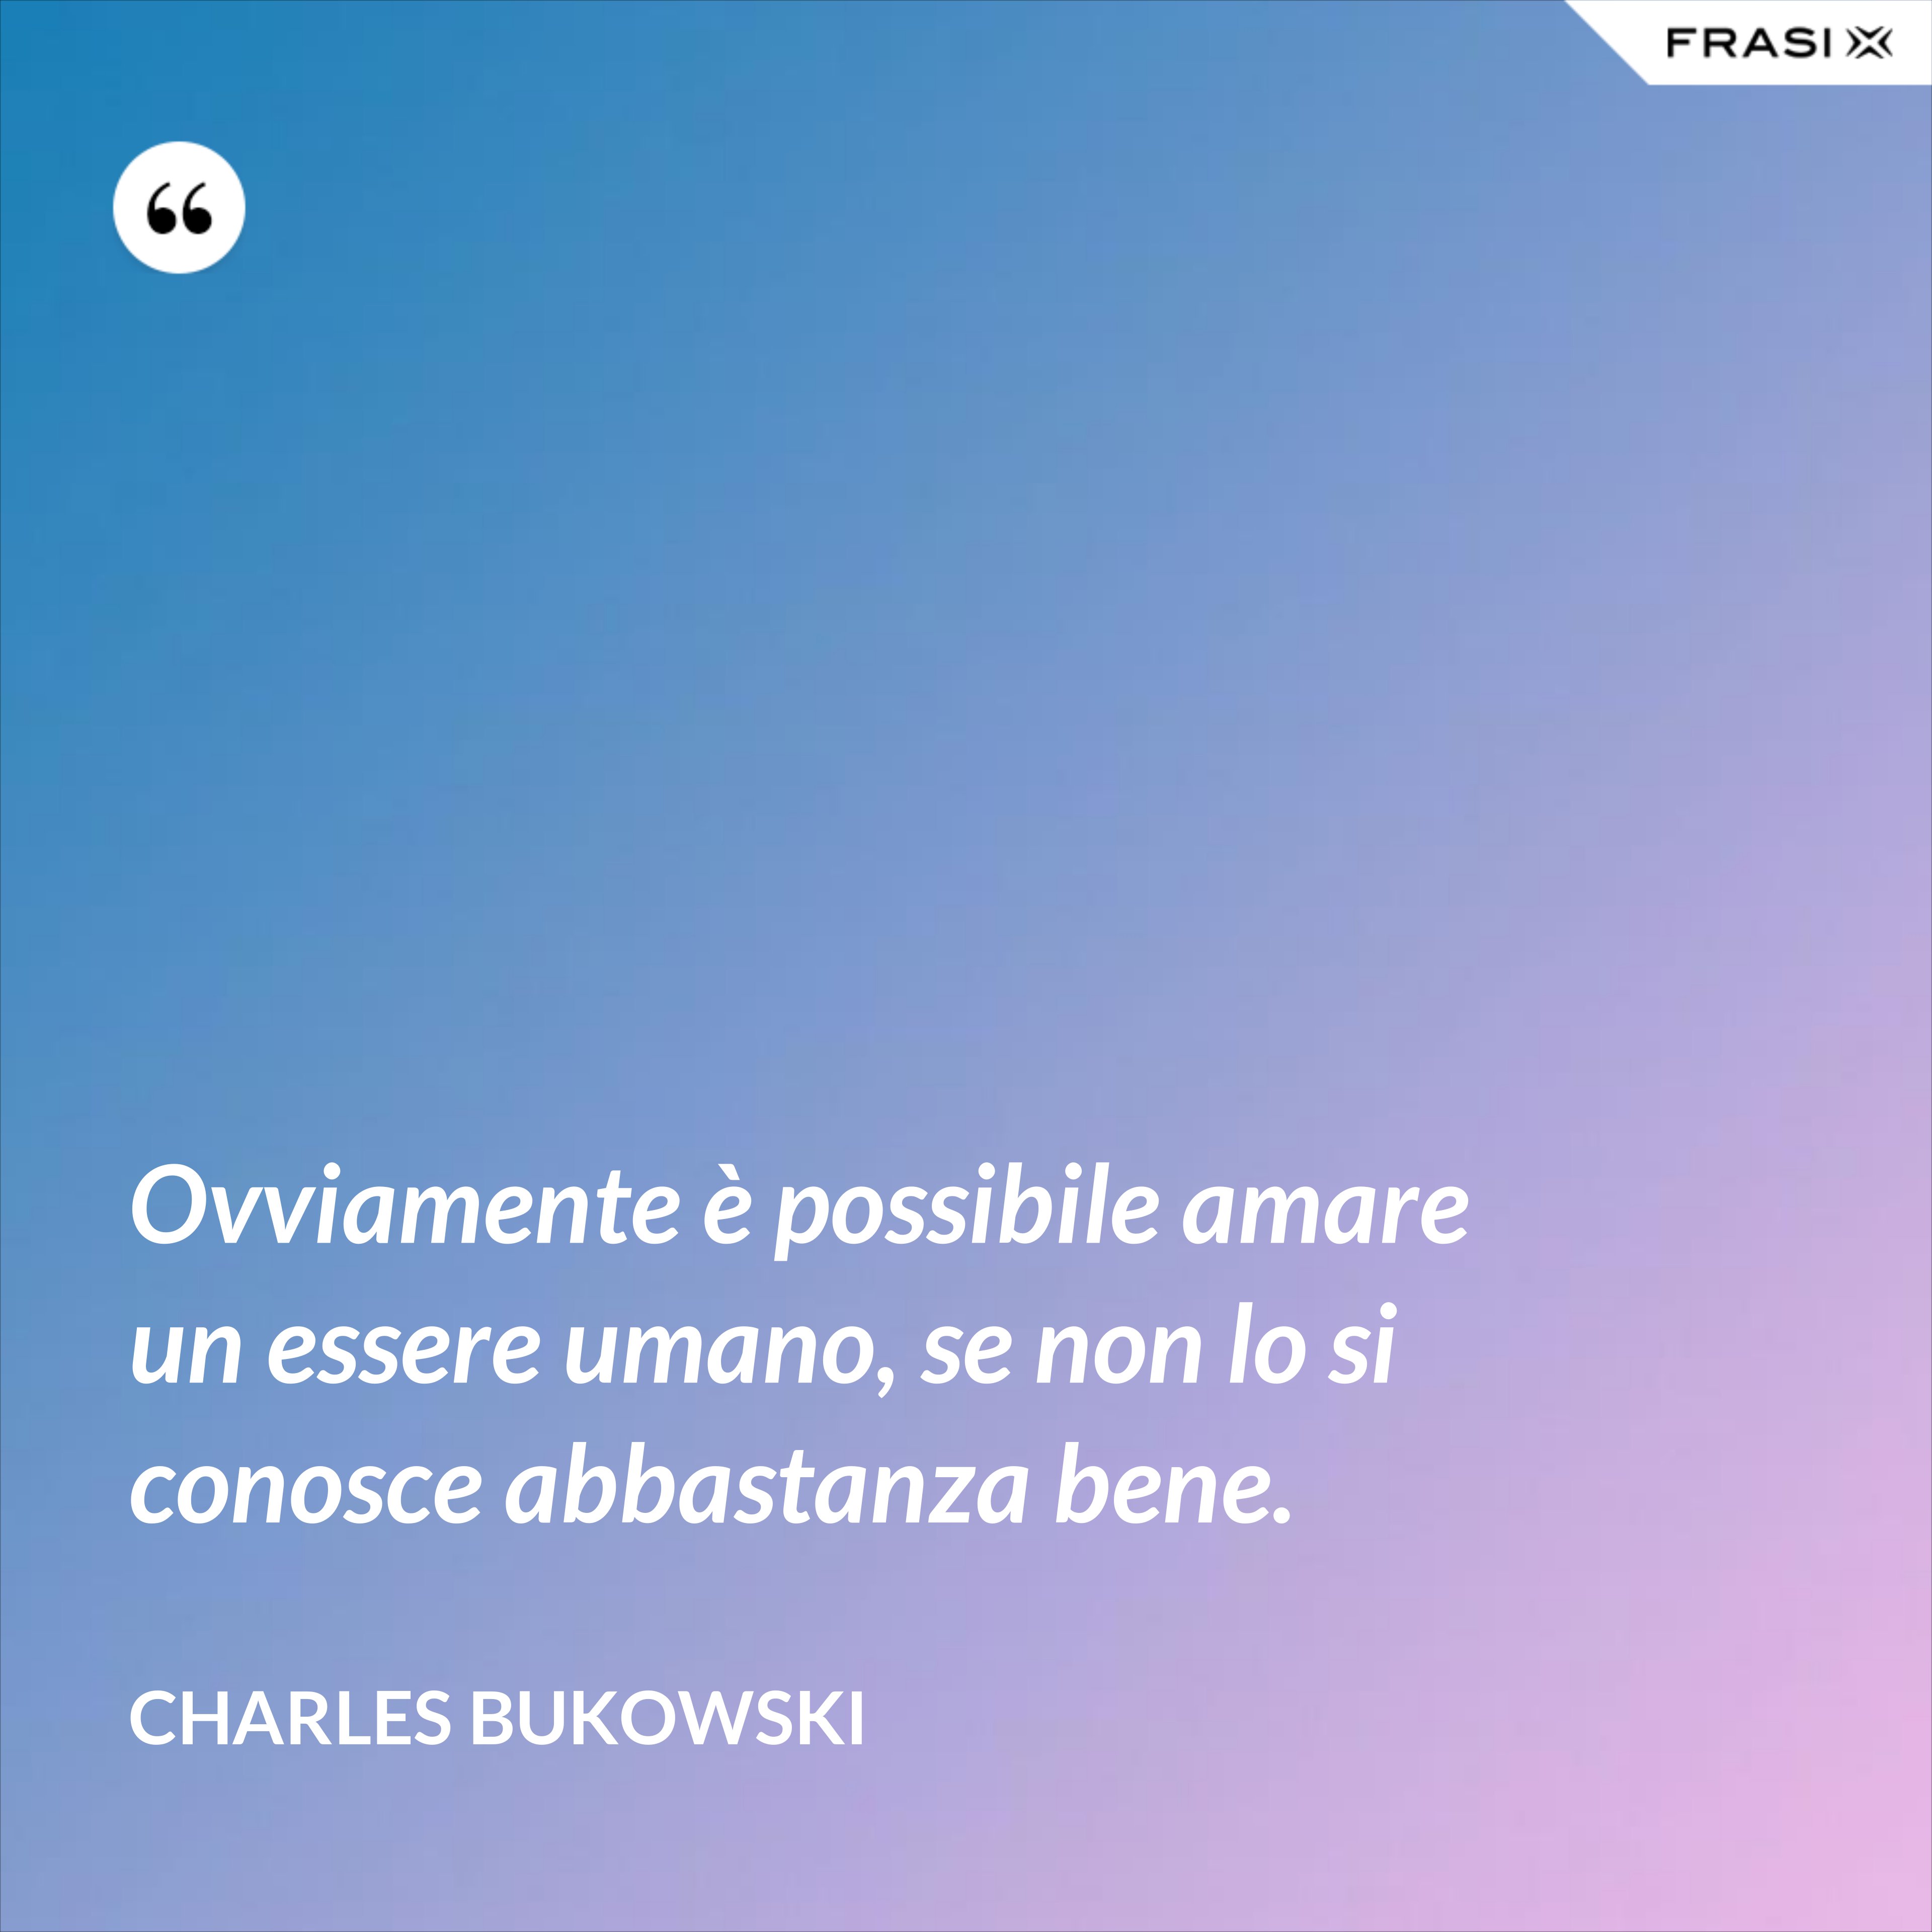 Ovviamente è possibile amare un essere umano, se non lo si conosce abbastanza bene. - Charles Bukowski